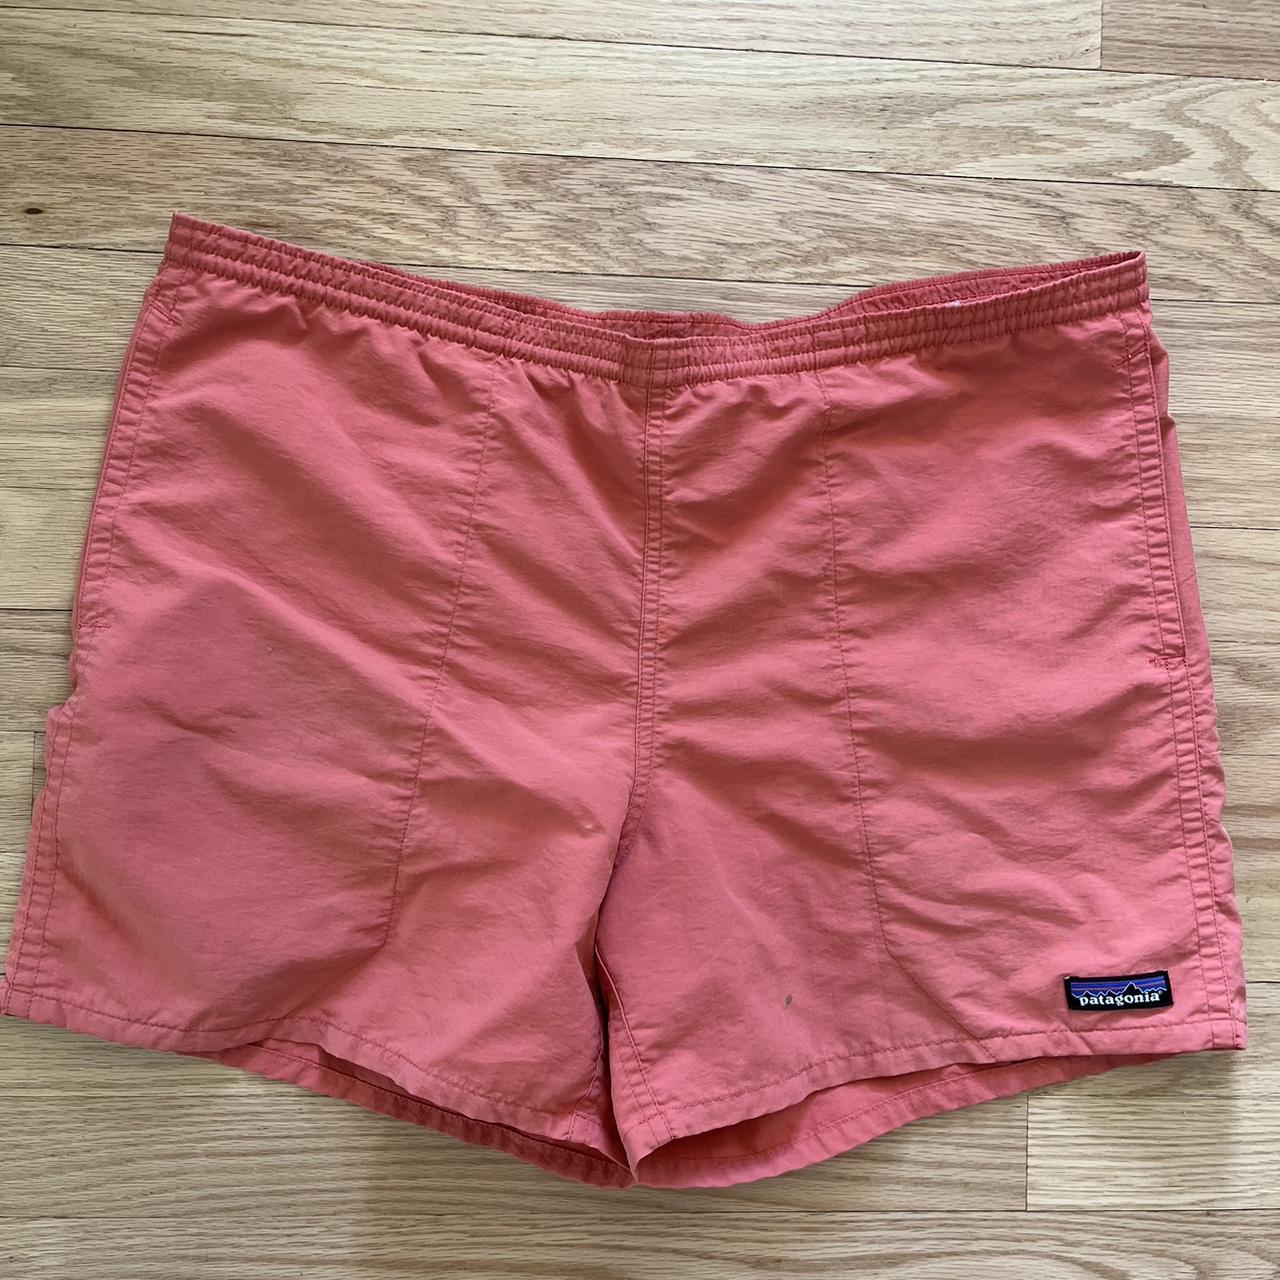 Patagonia Men's Orange and Pink Shorts | Depop